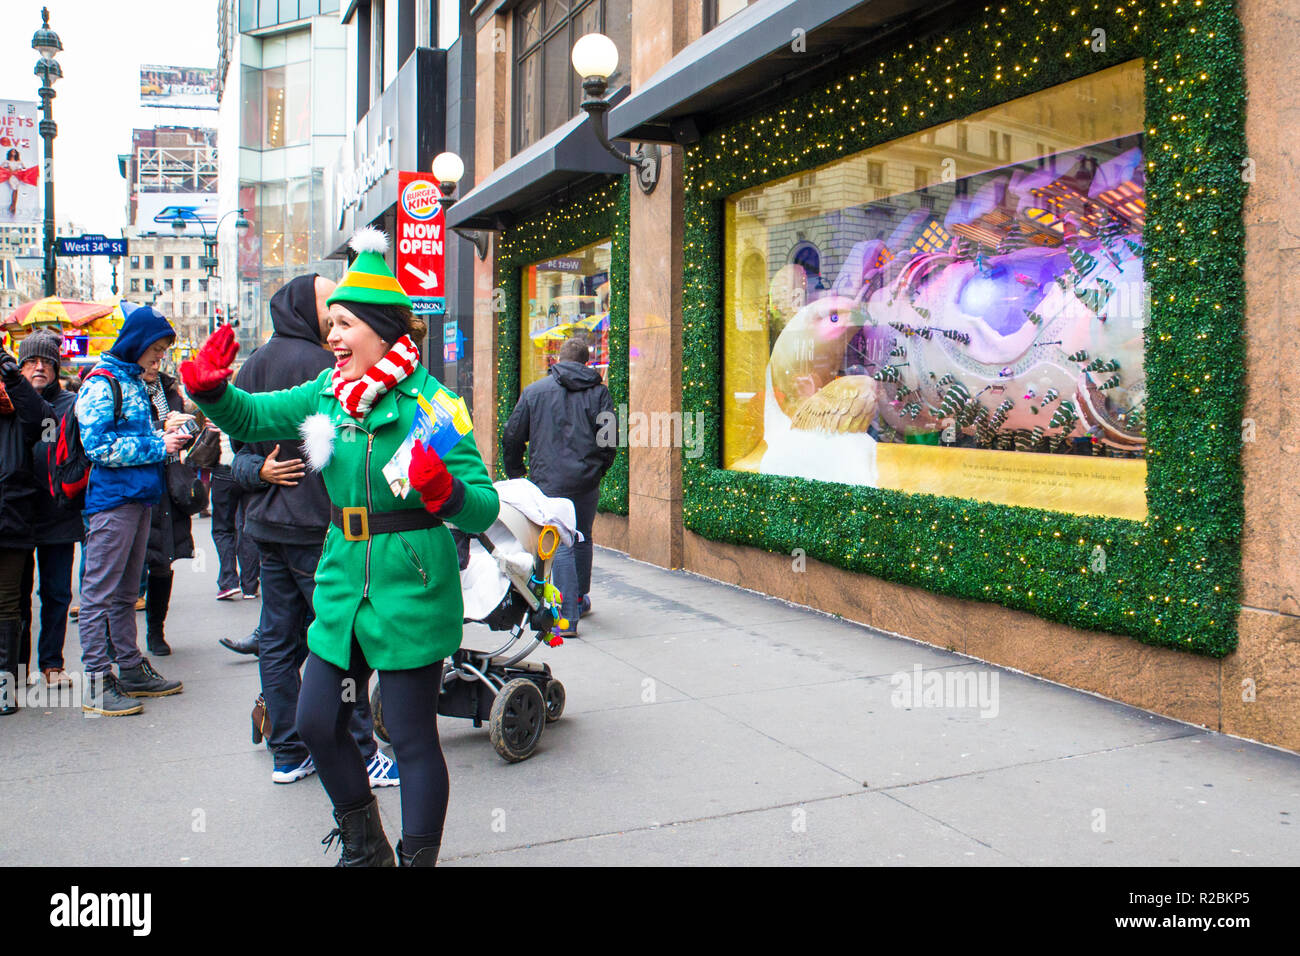 NEW YORK CITY - 17 décembre 2017 : scène de rue de Macy's Department Store à Herald Square à Manhattan, avec maison de vitrines et les gens. Banque D'Images